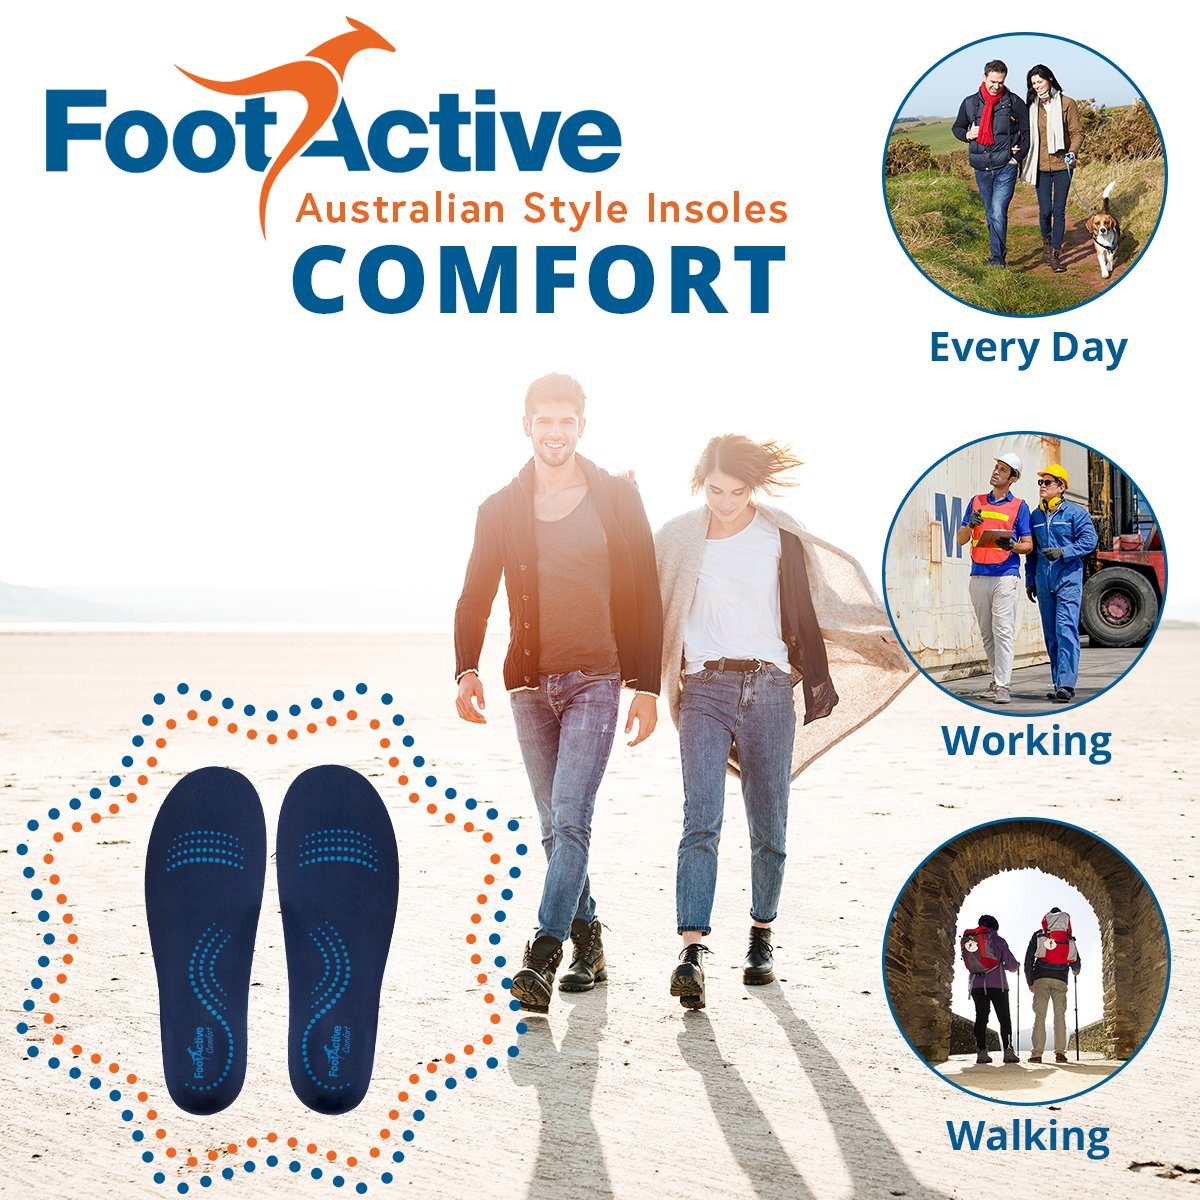 COMFORT, Fersen, Biomechanische und - Fußproblemen! und Fersensporn für Perfekte speziell Rücken, Einlegesohlen Füße, FootActive FootActive Knie Unterstützung Einlegesohlen bei